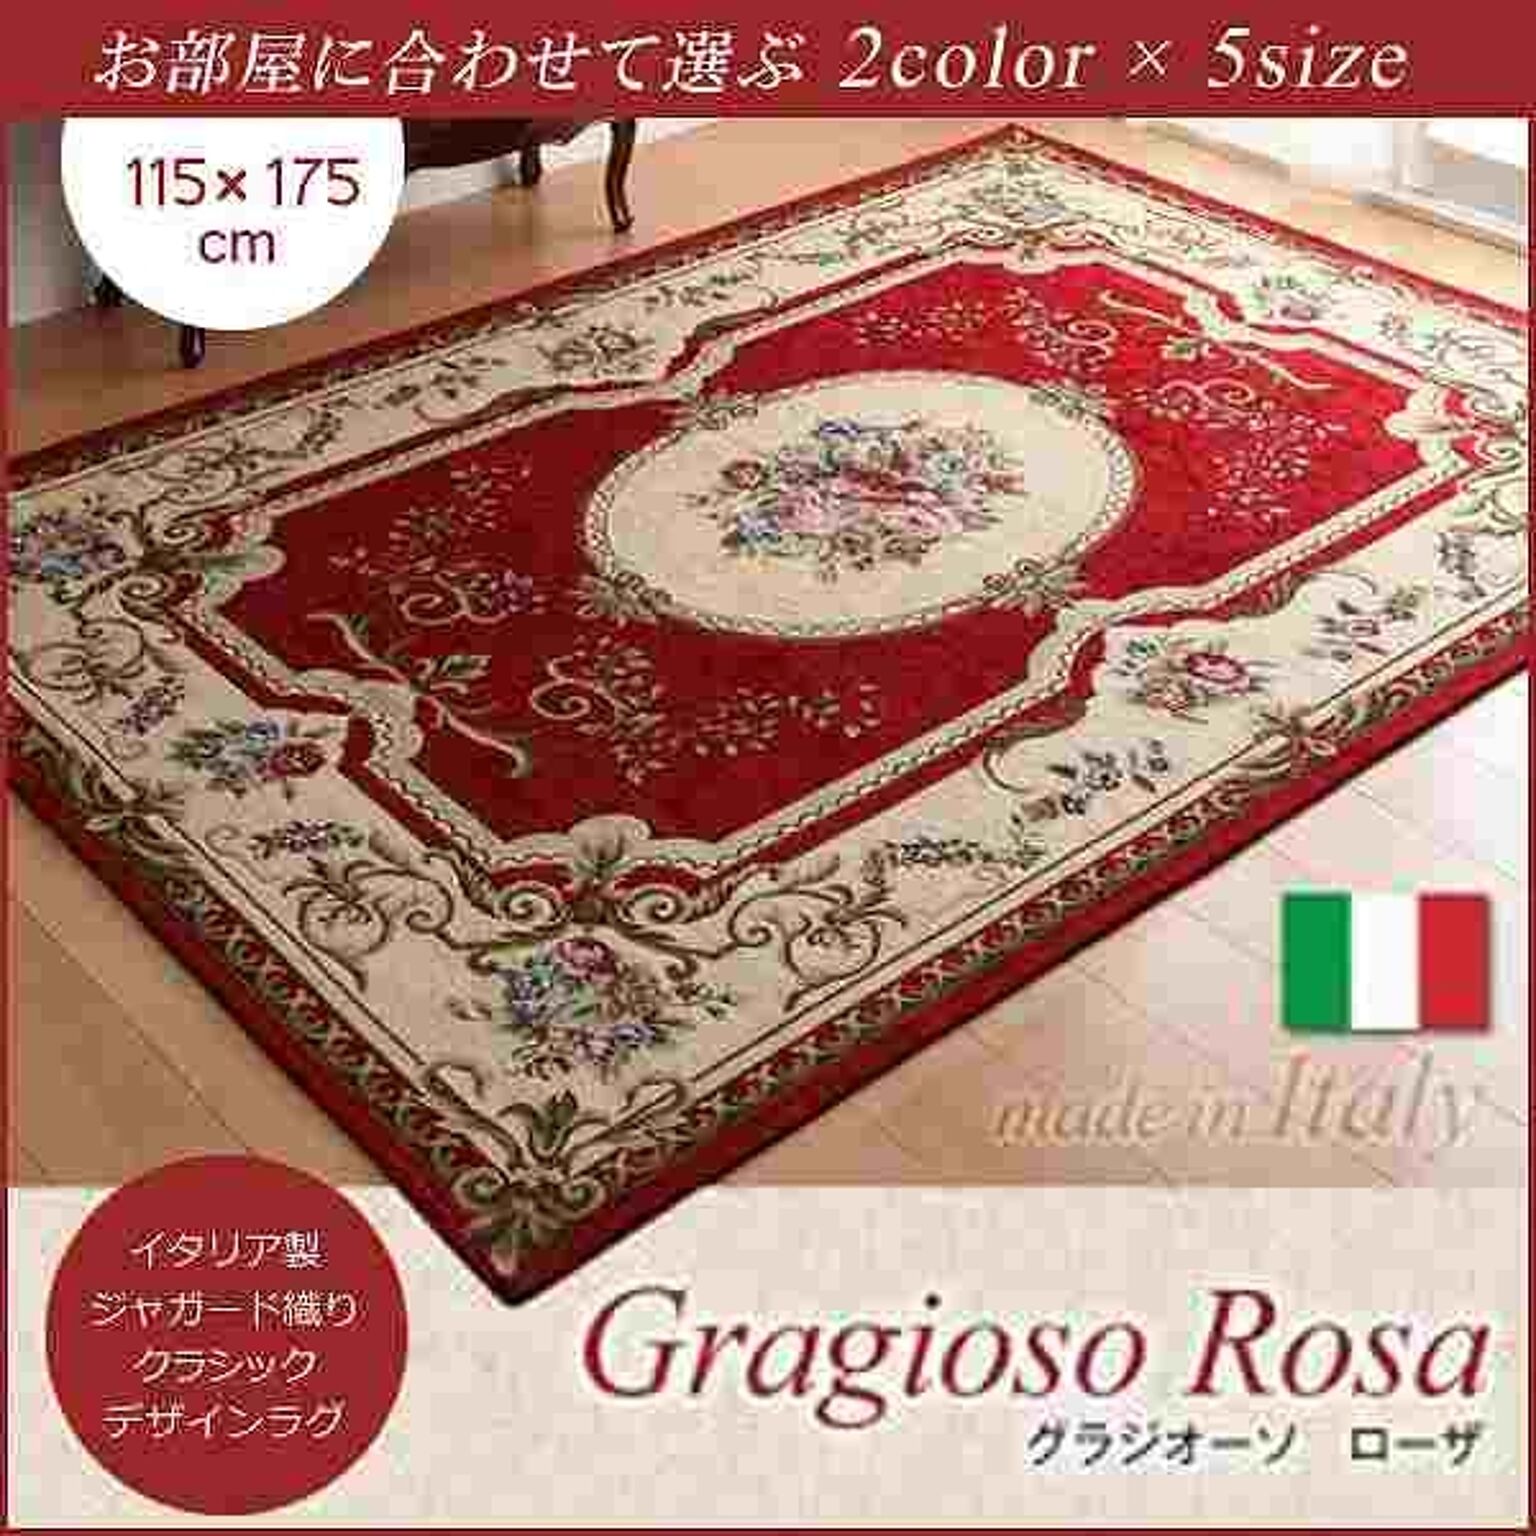 イタリア製ジャガード織りラグ Gragioso Rosa 115×175cm レッド